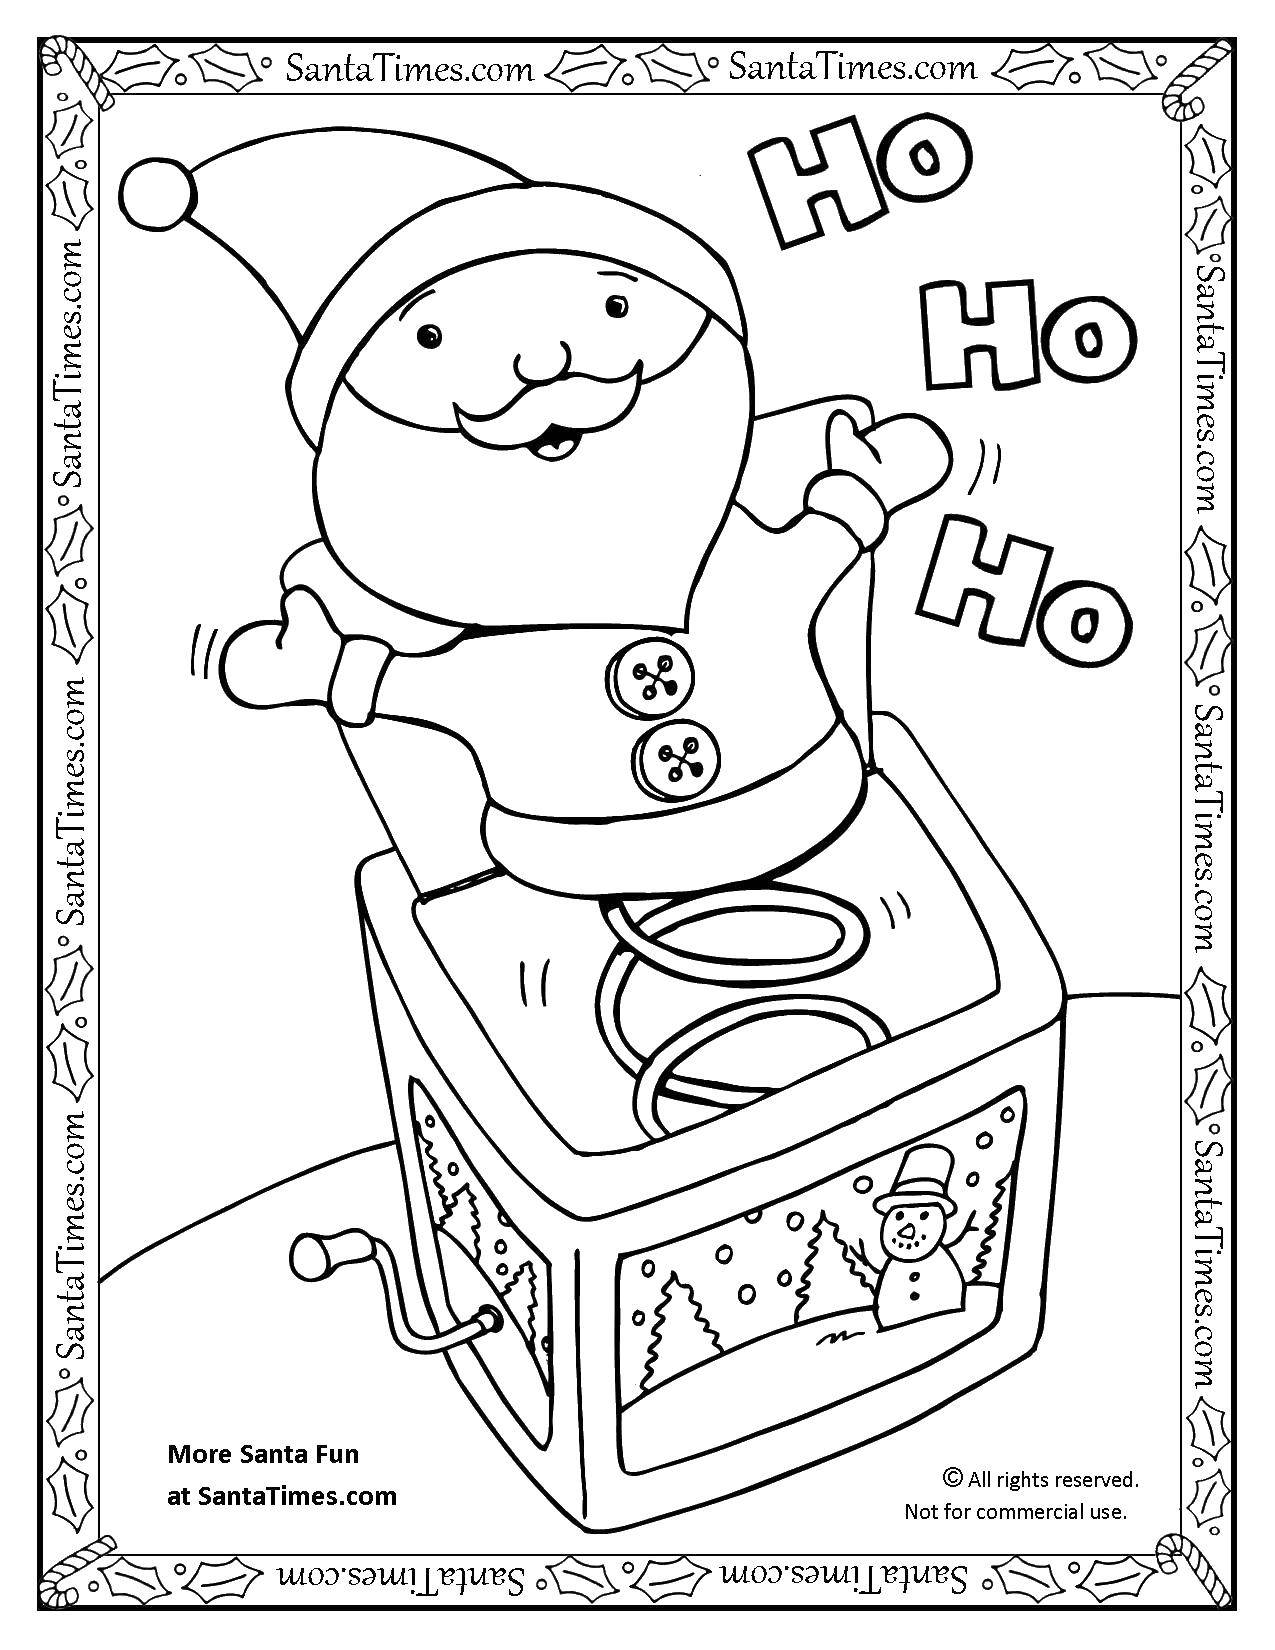 Coloring Santa in a box. Category toys. Tags:  box, Santa.